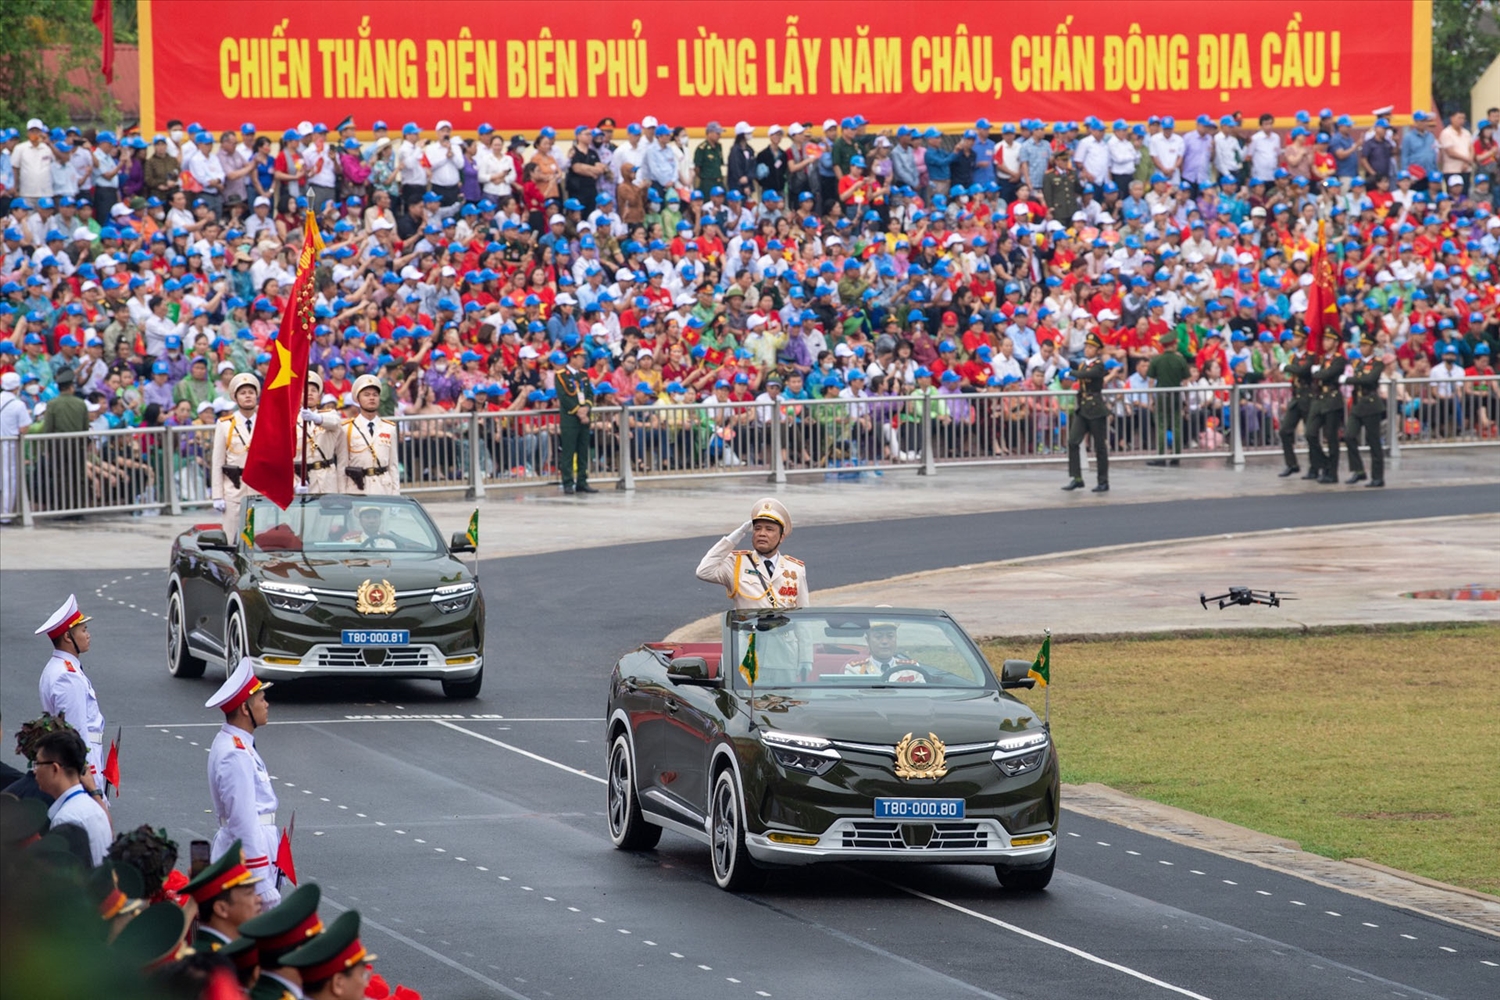 Thiếu tướng Lê Văn Hà trên chiếc VF 8 nổi bật với Công an hiệu ở đầu xe thay vị trí logo và hai lá cờ truyền thống.